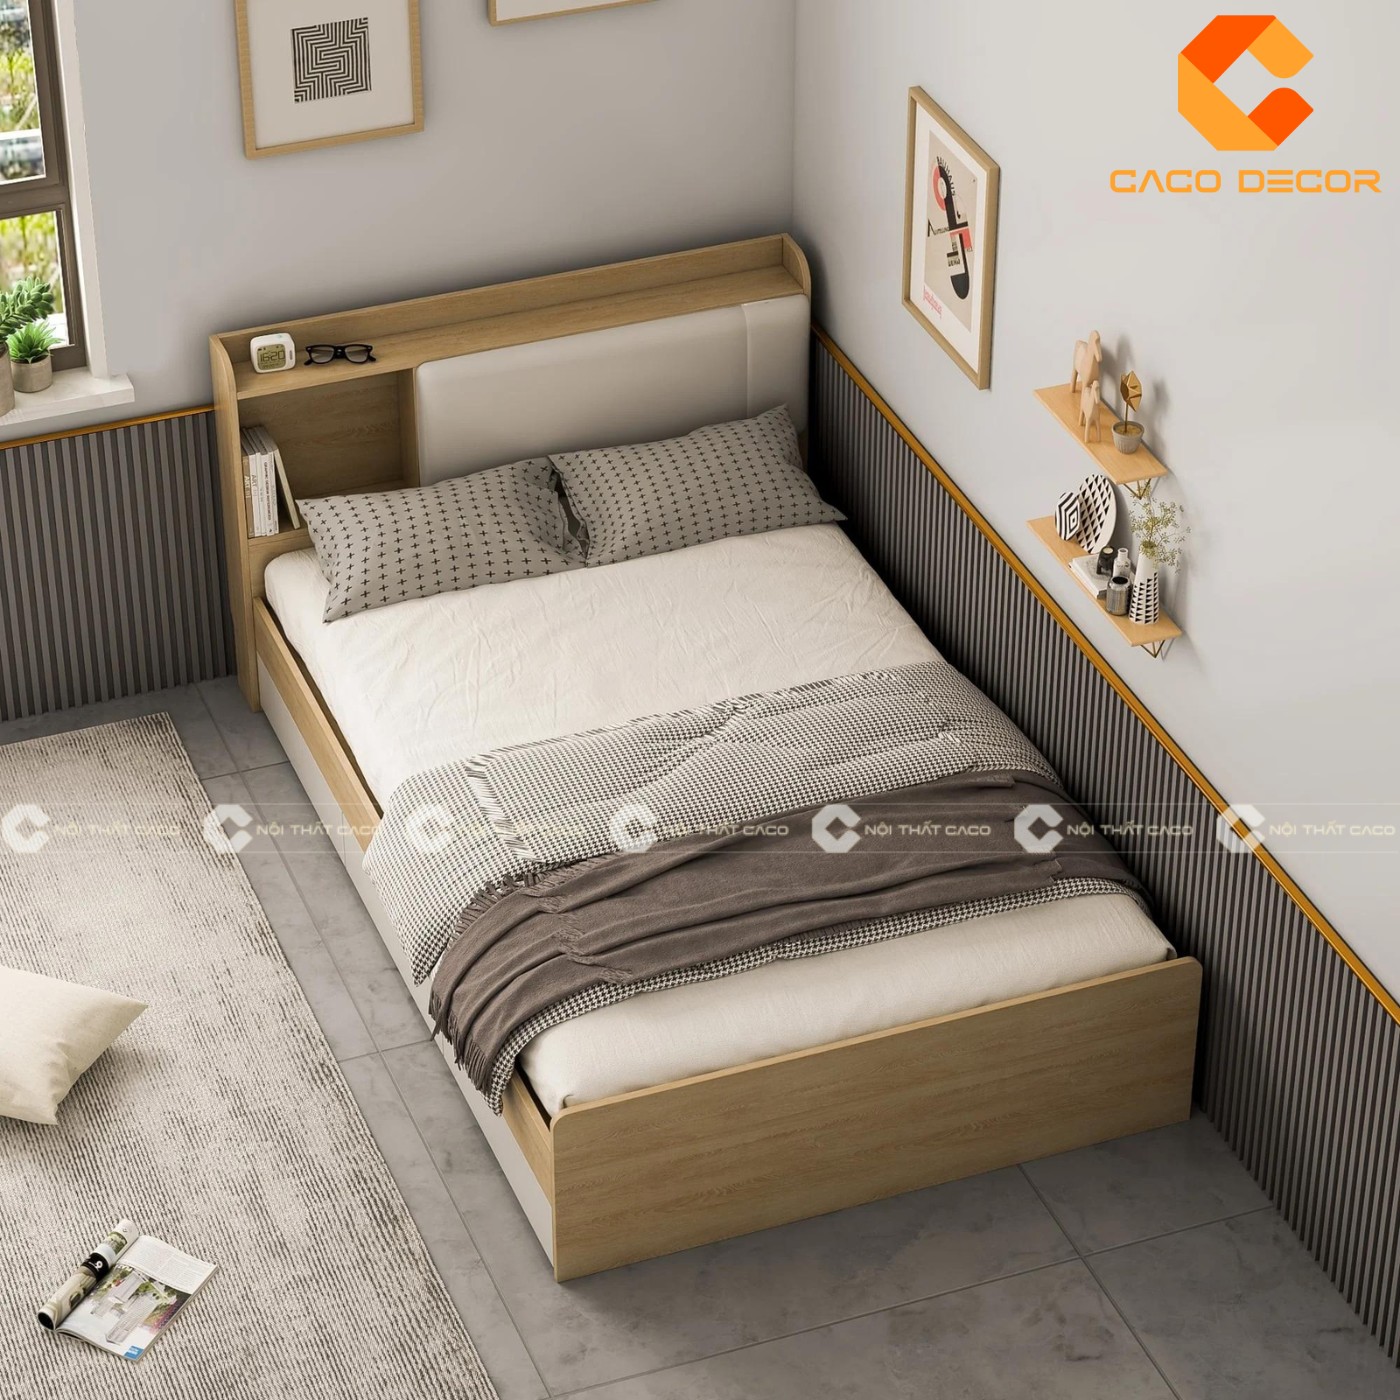 Giường ngủ gỗ công nghiệp đẹp, chất lượng với giá tốt nhất thị trường 9